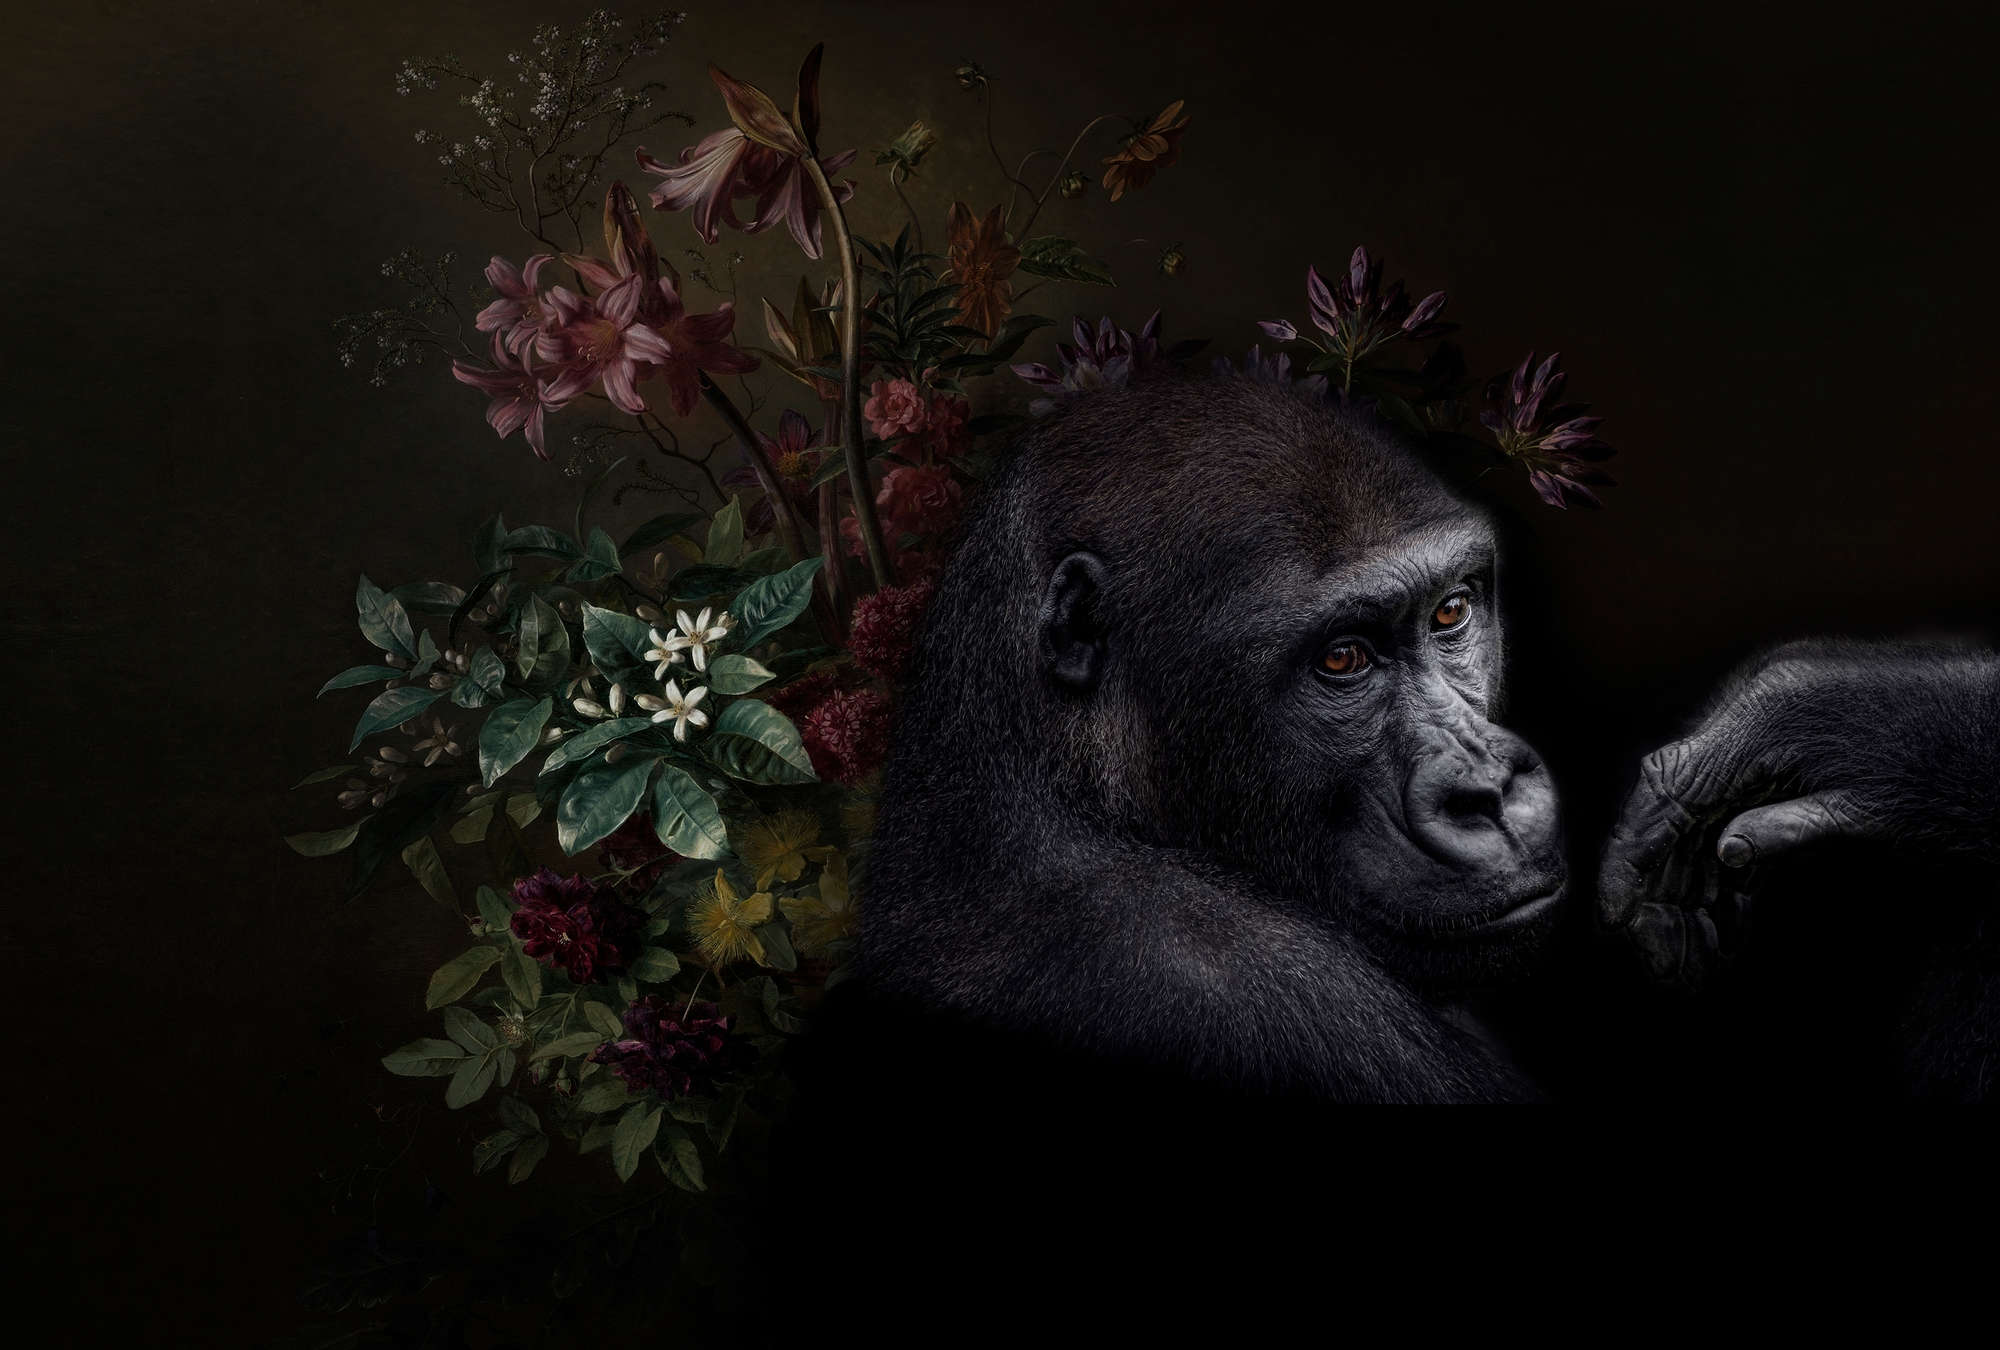             Muurschildering Gorilla Portret met bloemen - Walls by Patel
        